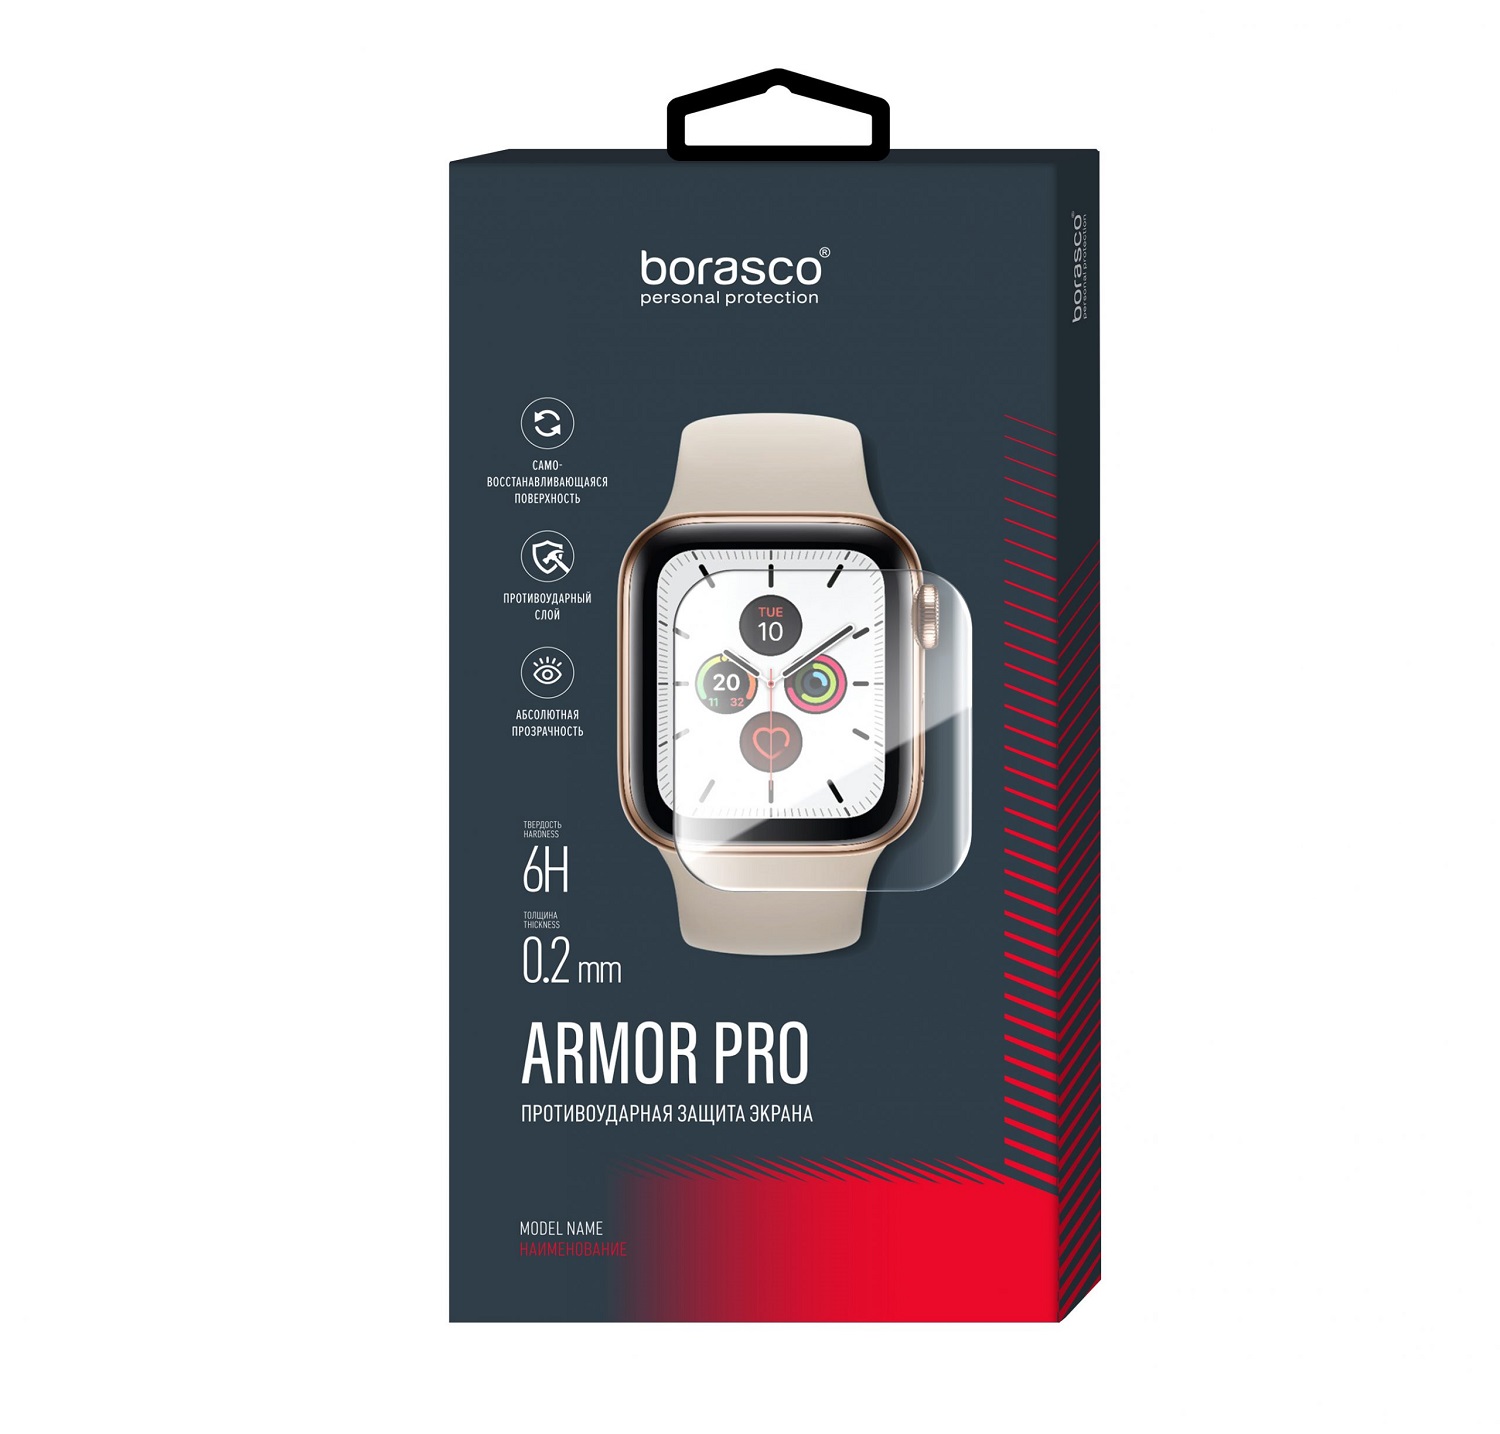 Защита экрана BoraSCO Armor Pro для Xiaomi Mi band 4/5 защита экрана borasco armor pro для honor band 4 5 матовый